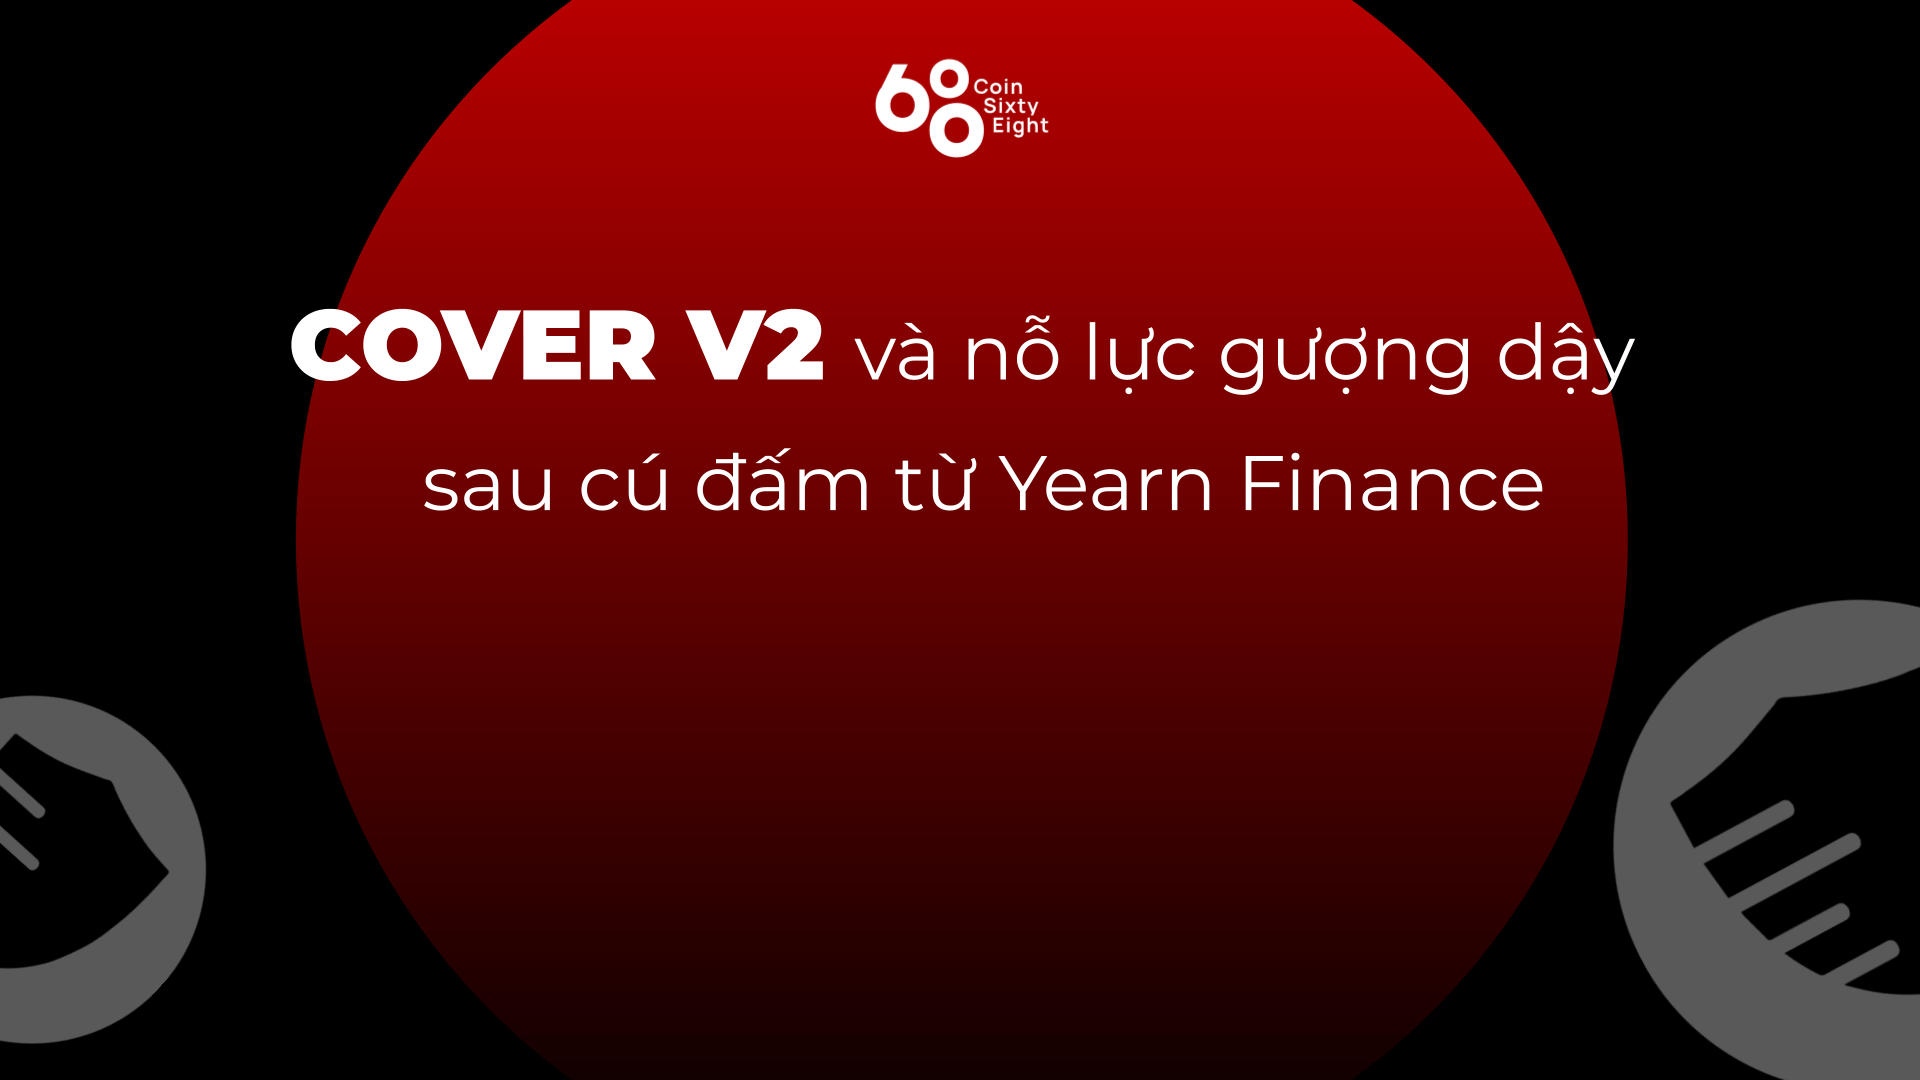 COVER V2 - Nỗ lực gượng dậy sau cú đấm từ Yearn Finance